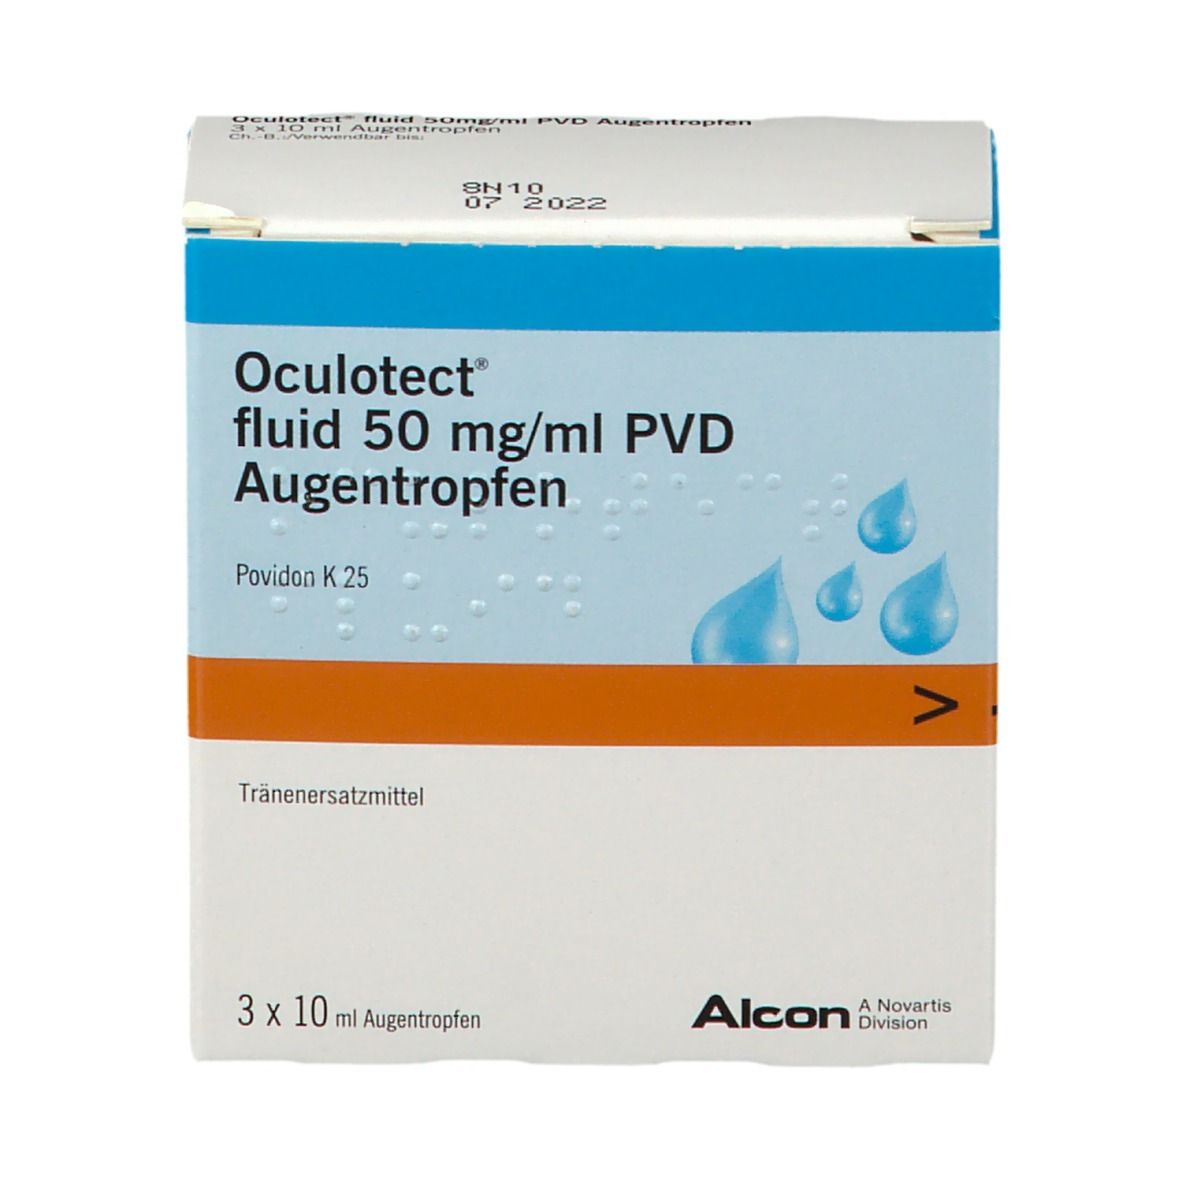 Oculotect® fluid PVD